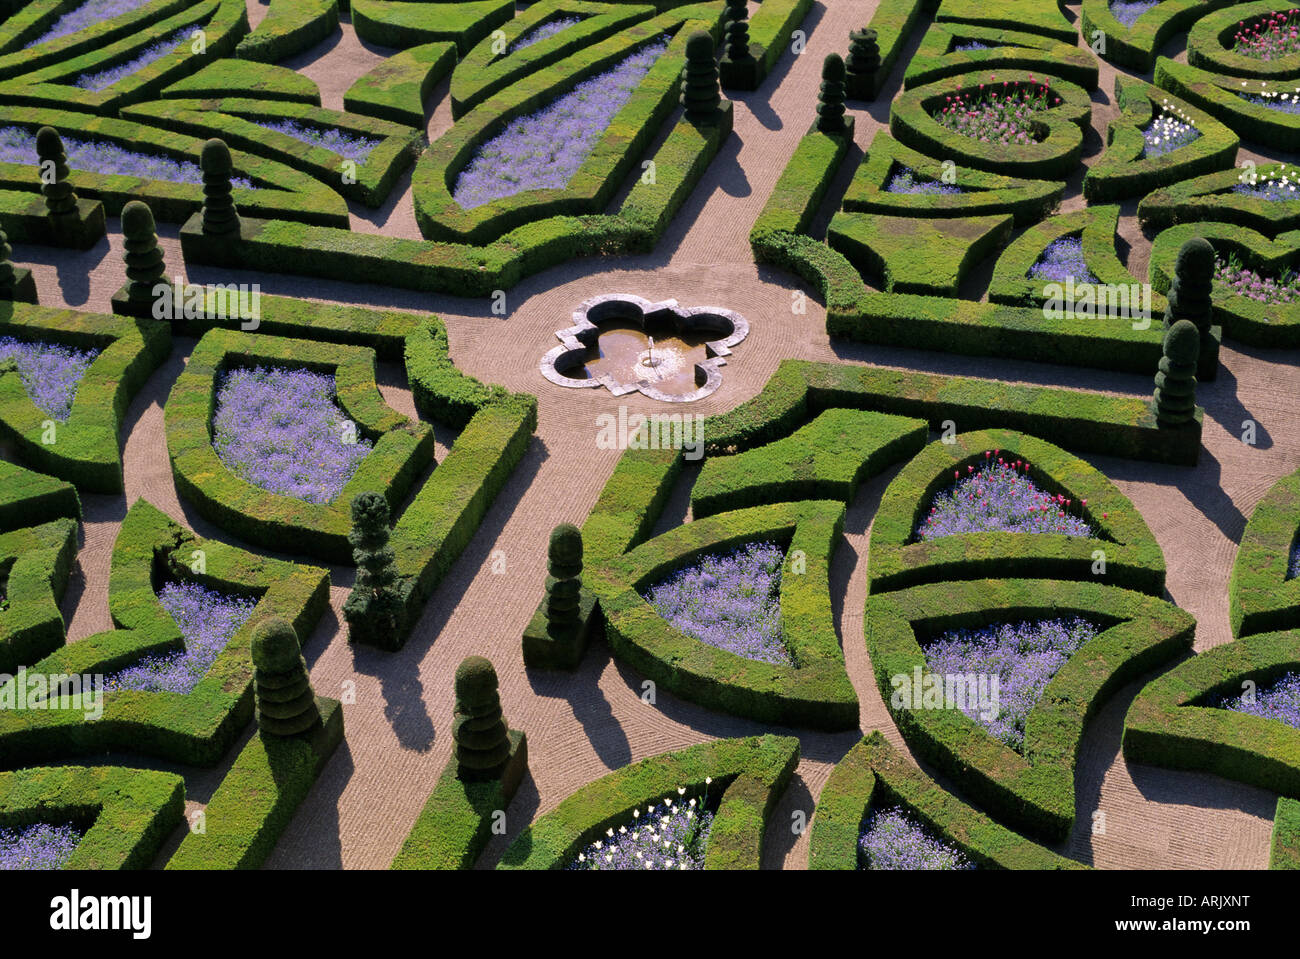 Jardins à la française, le château de Villandry, Indre et Loire, Loire, France, Europe Banque D'Images